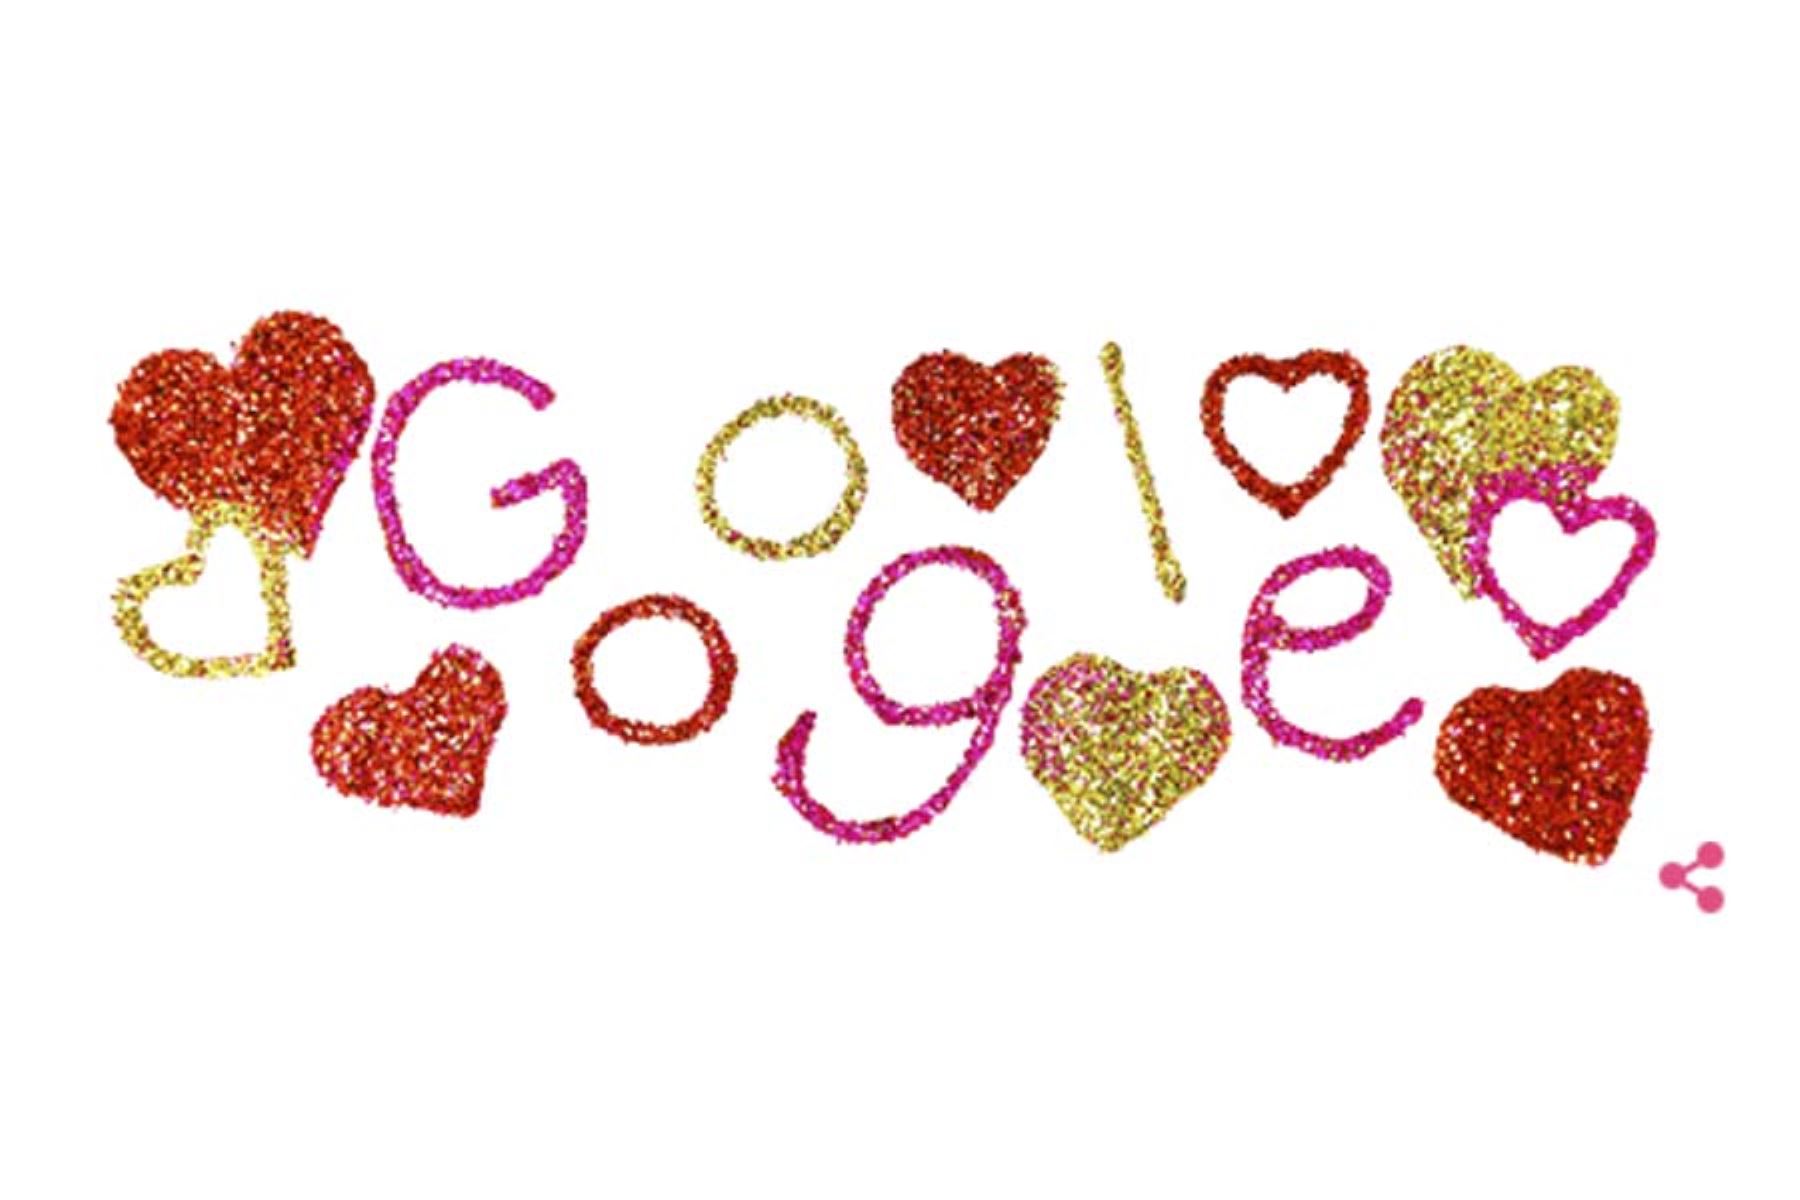 El doodle de San Valentín es una animación hecha con escarcha de colores.